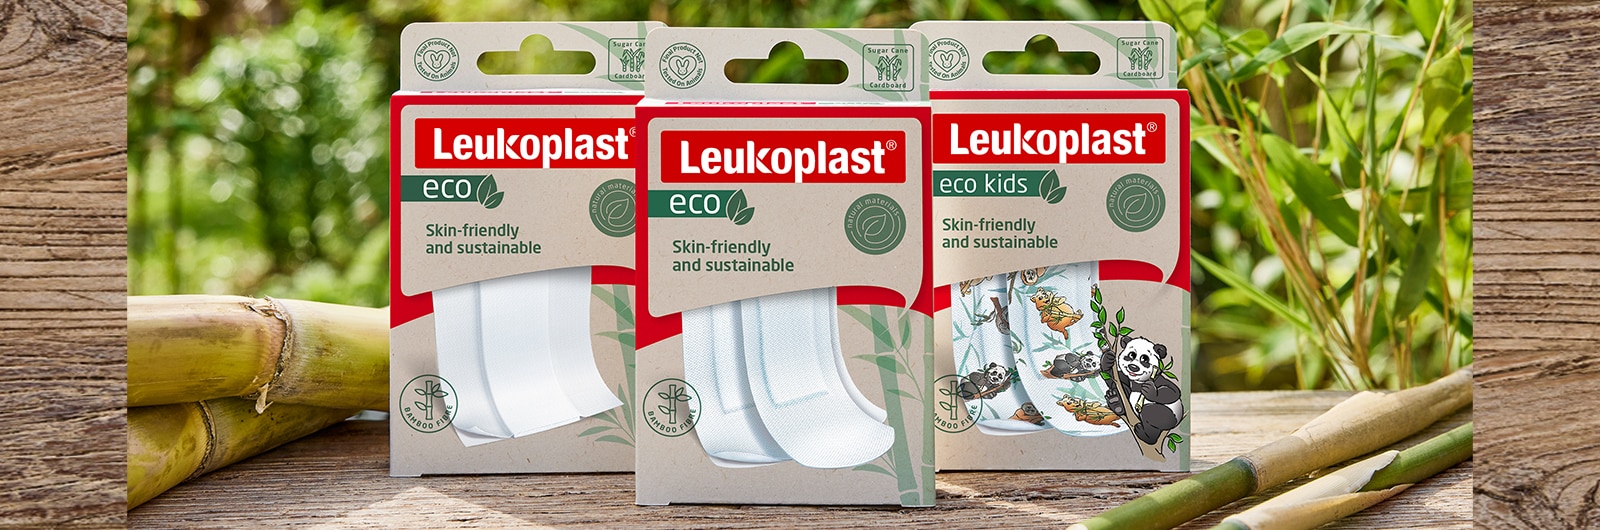 Imagem que mostra a embalagem do Leukoplast eco com pensos, tiras e edição para crianças